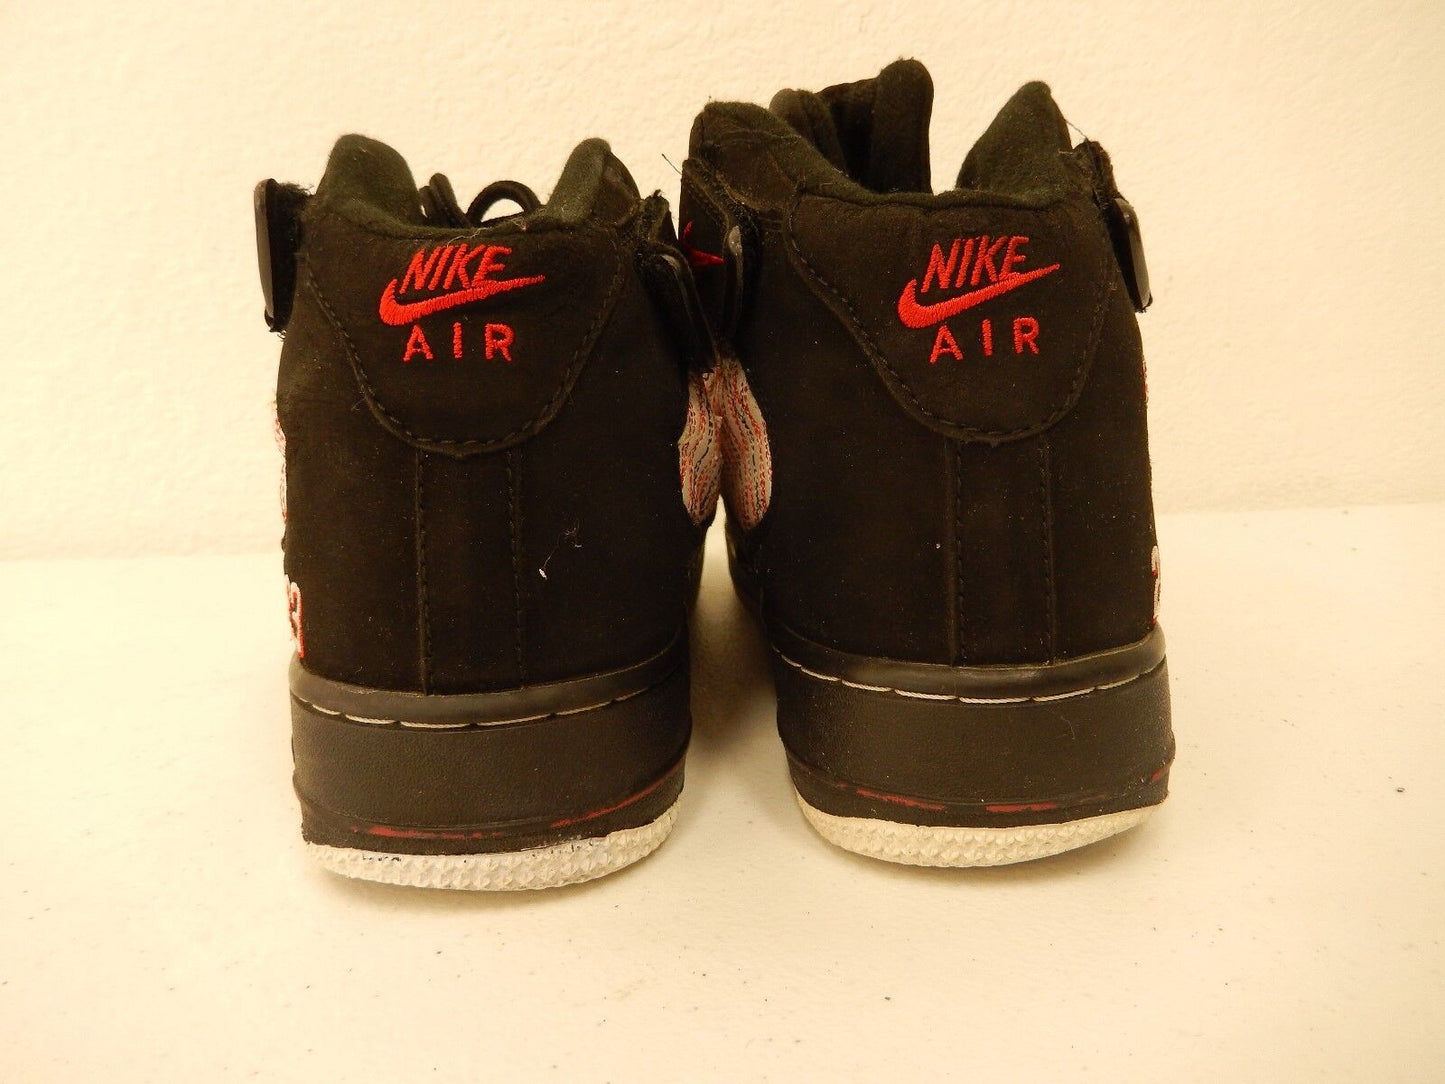 Nike Air Jordan  Retro Black  Red 136027-061 sneakers Size 7